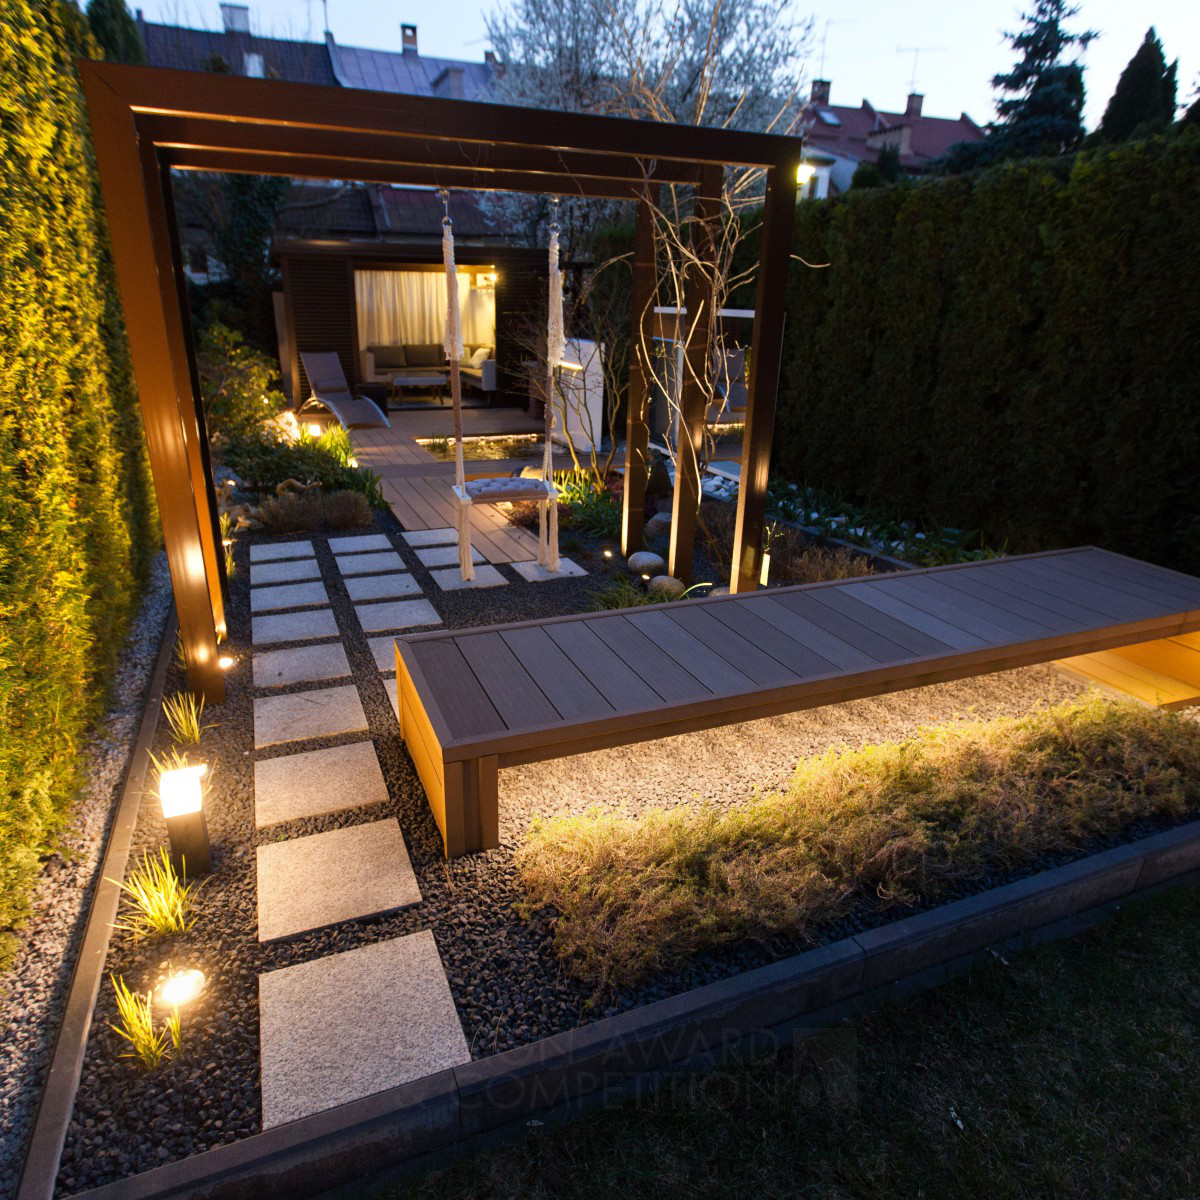 Small City Home Garden by Dagmara Berent Iron Landscape Planning and Garden Design Award Winner 2021 